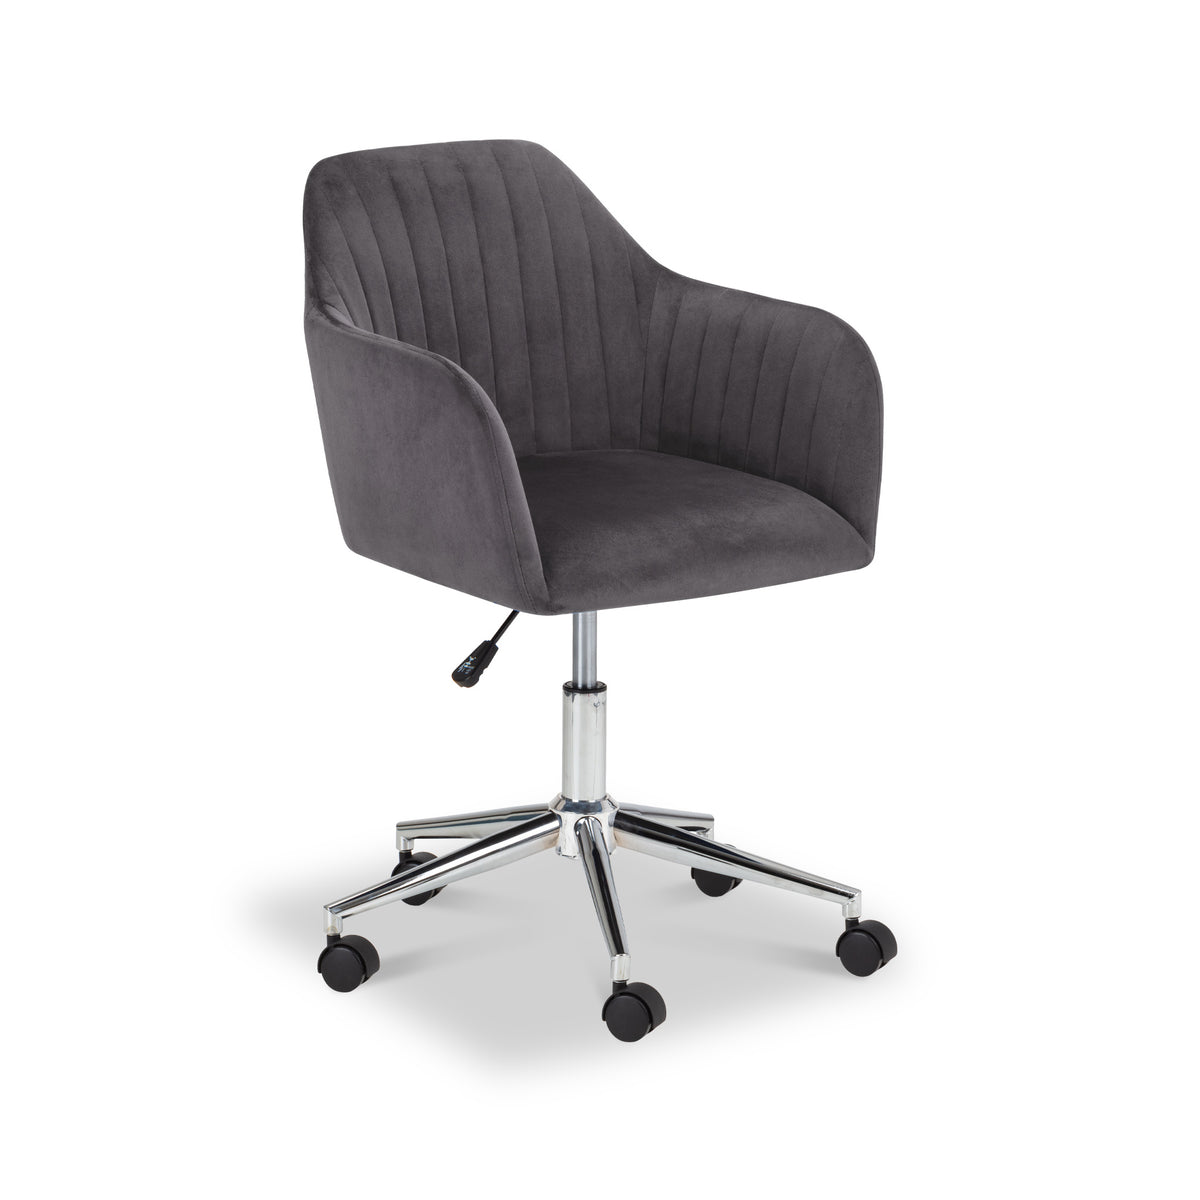 Malvern Grey Velvet Swivel Office Chair from Roseland Furniture